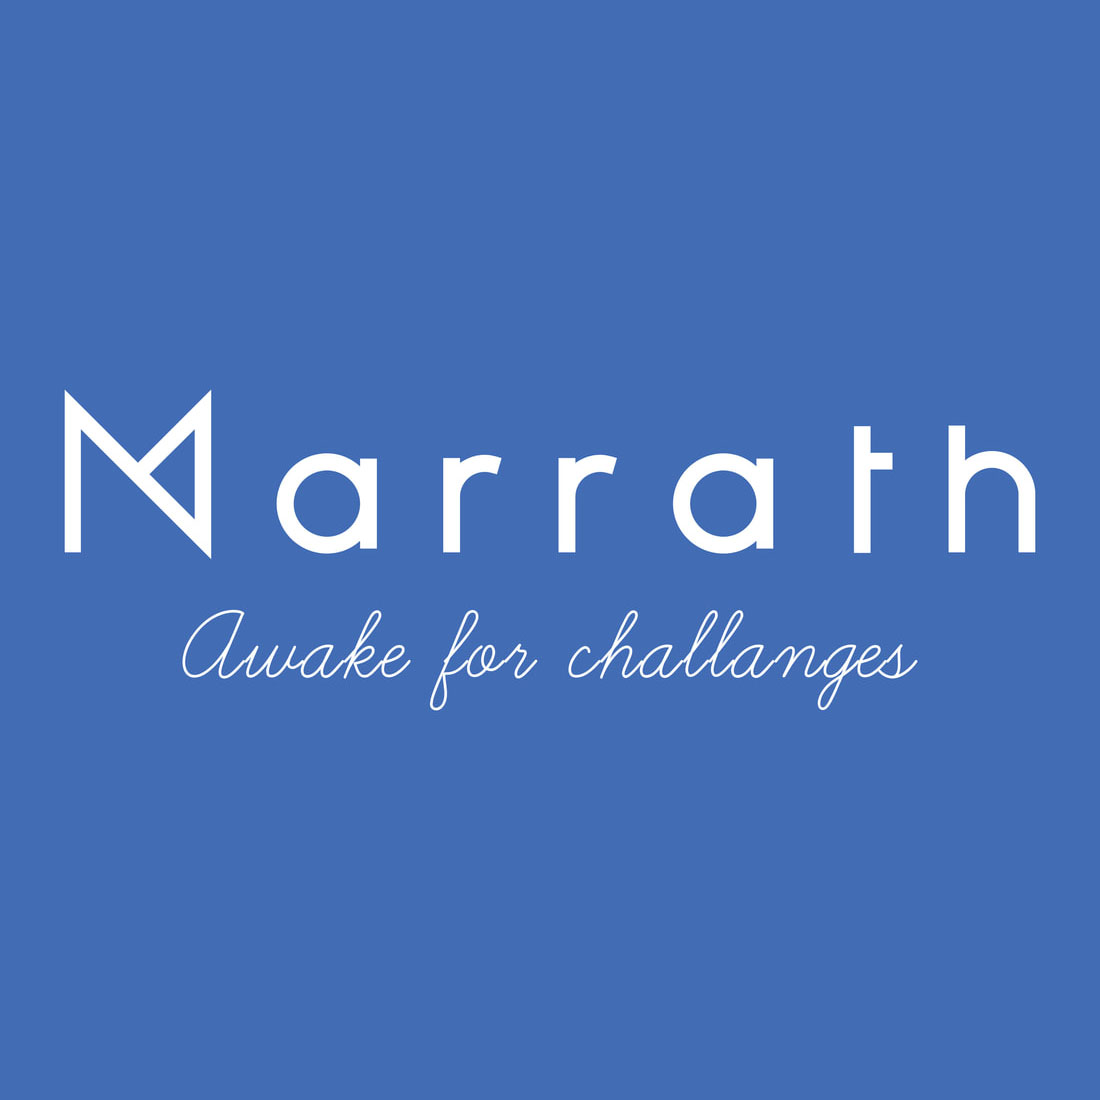 Marrath